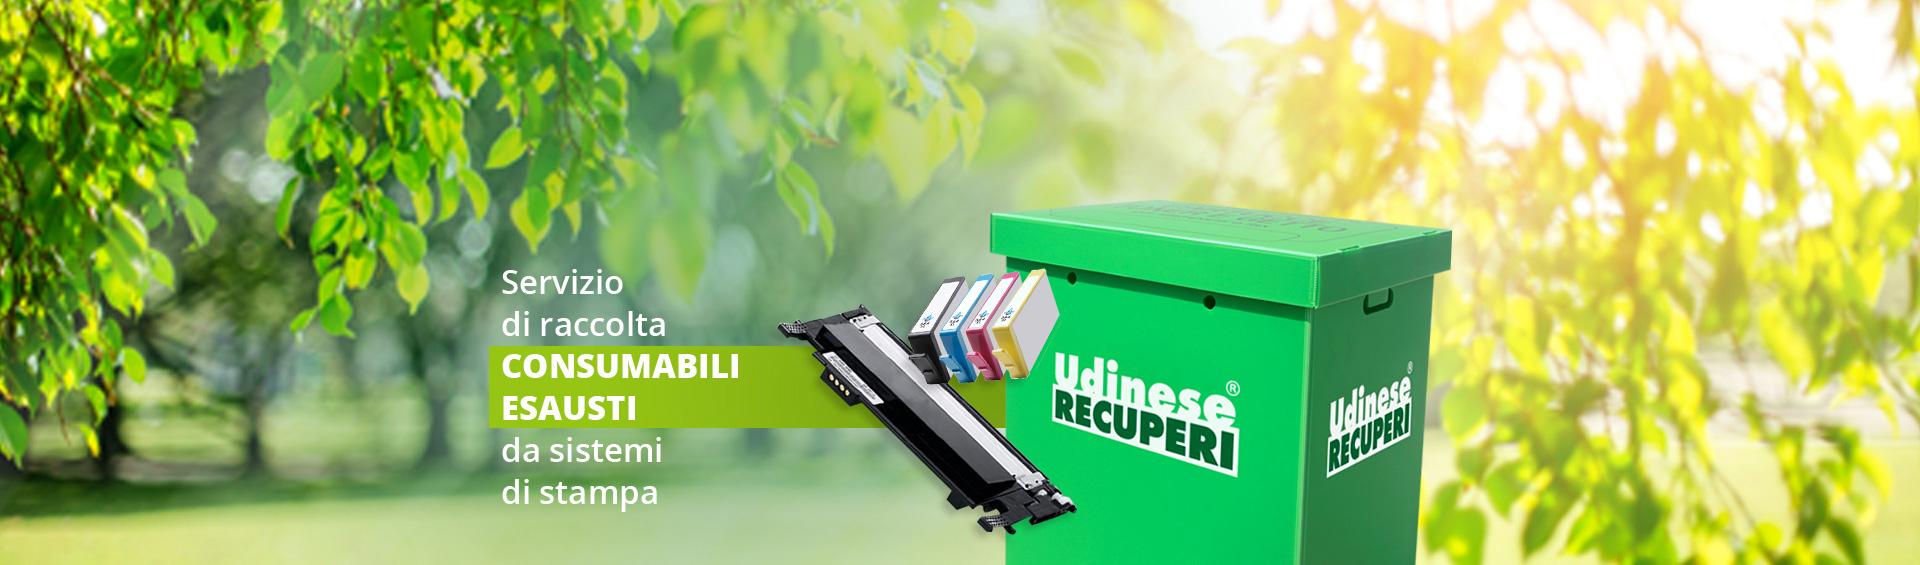 Udinese Recuperi eco-box raccolta differnziata cartucce e toner stampanti